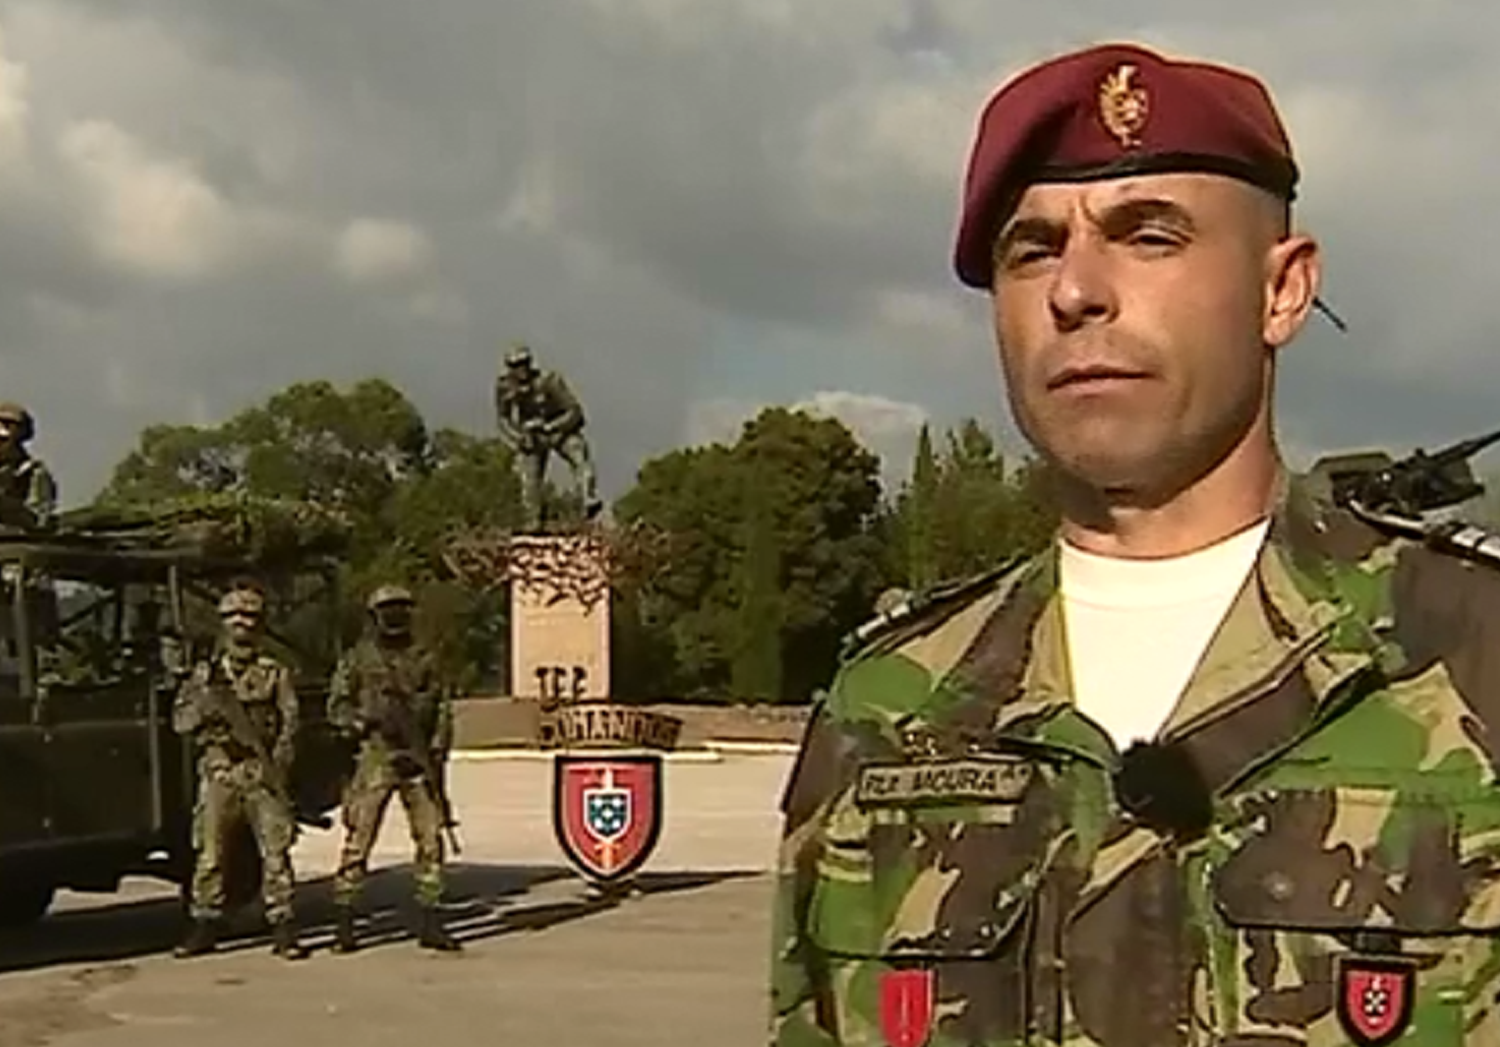 Comandos são a principal unidade de elite do Exército português